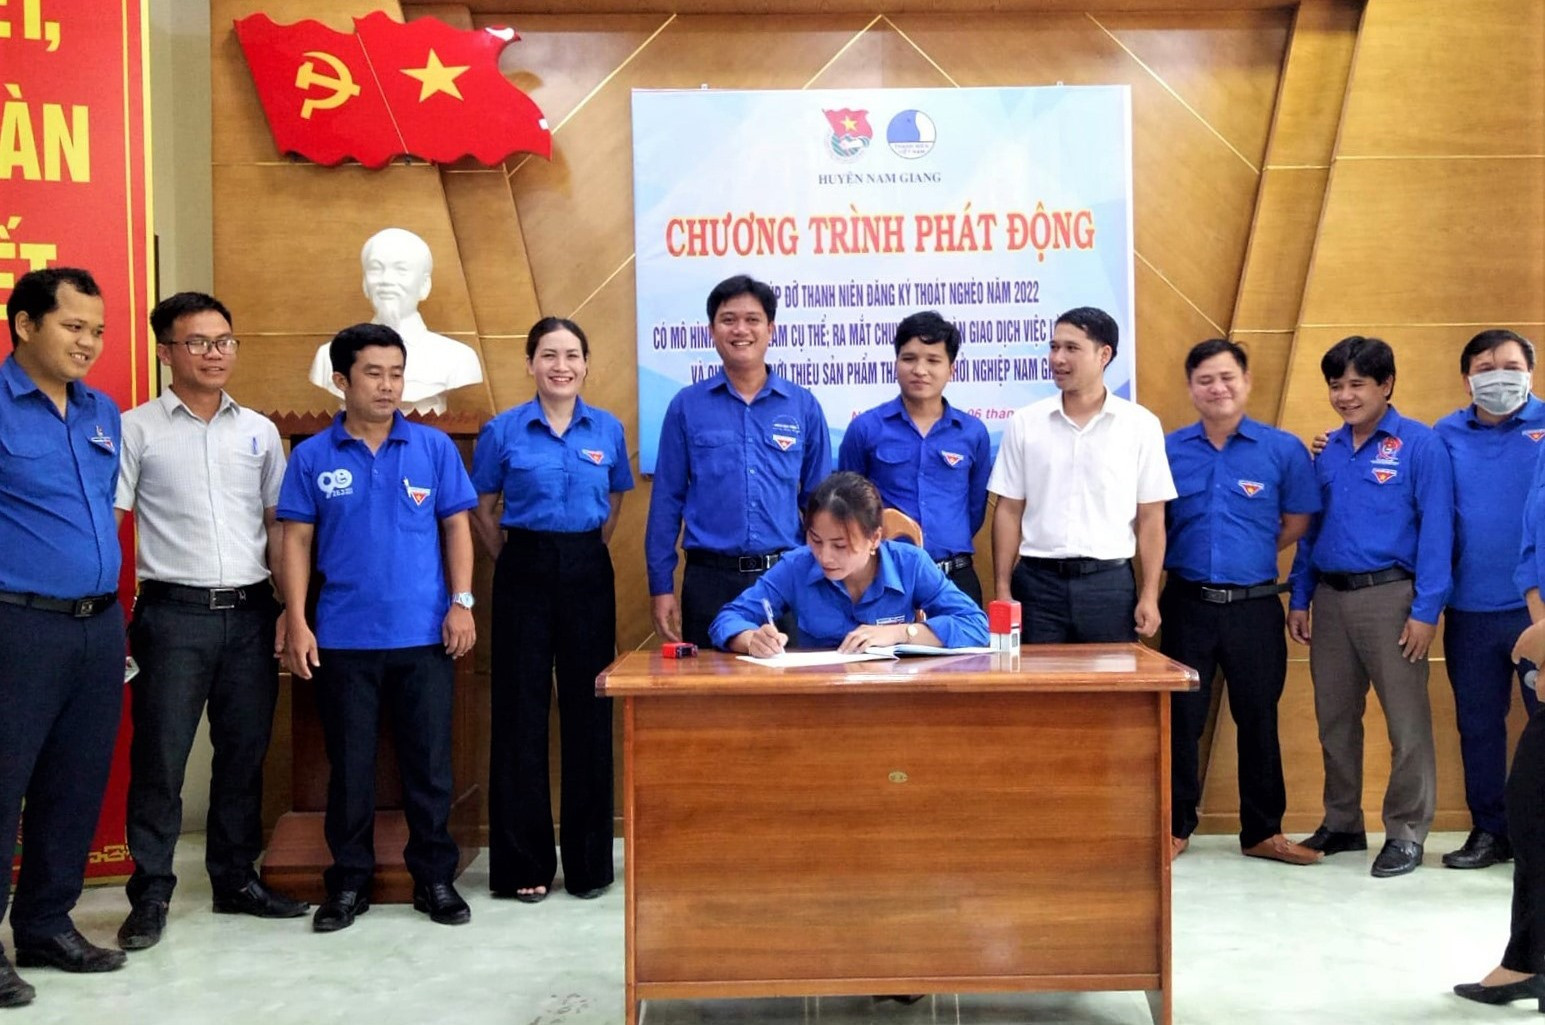 Huyện đoàn Nam Giang phát động chương trình đăng ký nhận giúp đỡ hộ thanh niên khó khăn vươn lên thoát nghèo năm 2022. Ảnh: P.V